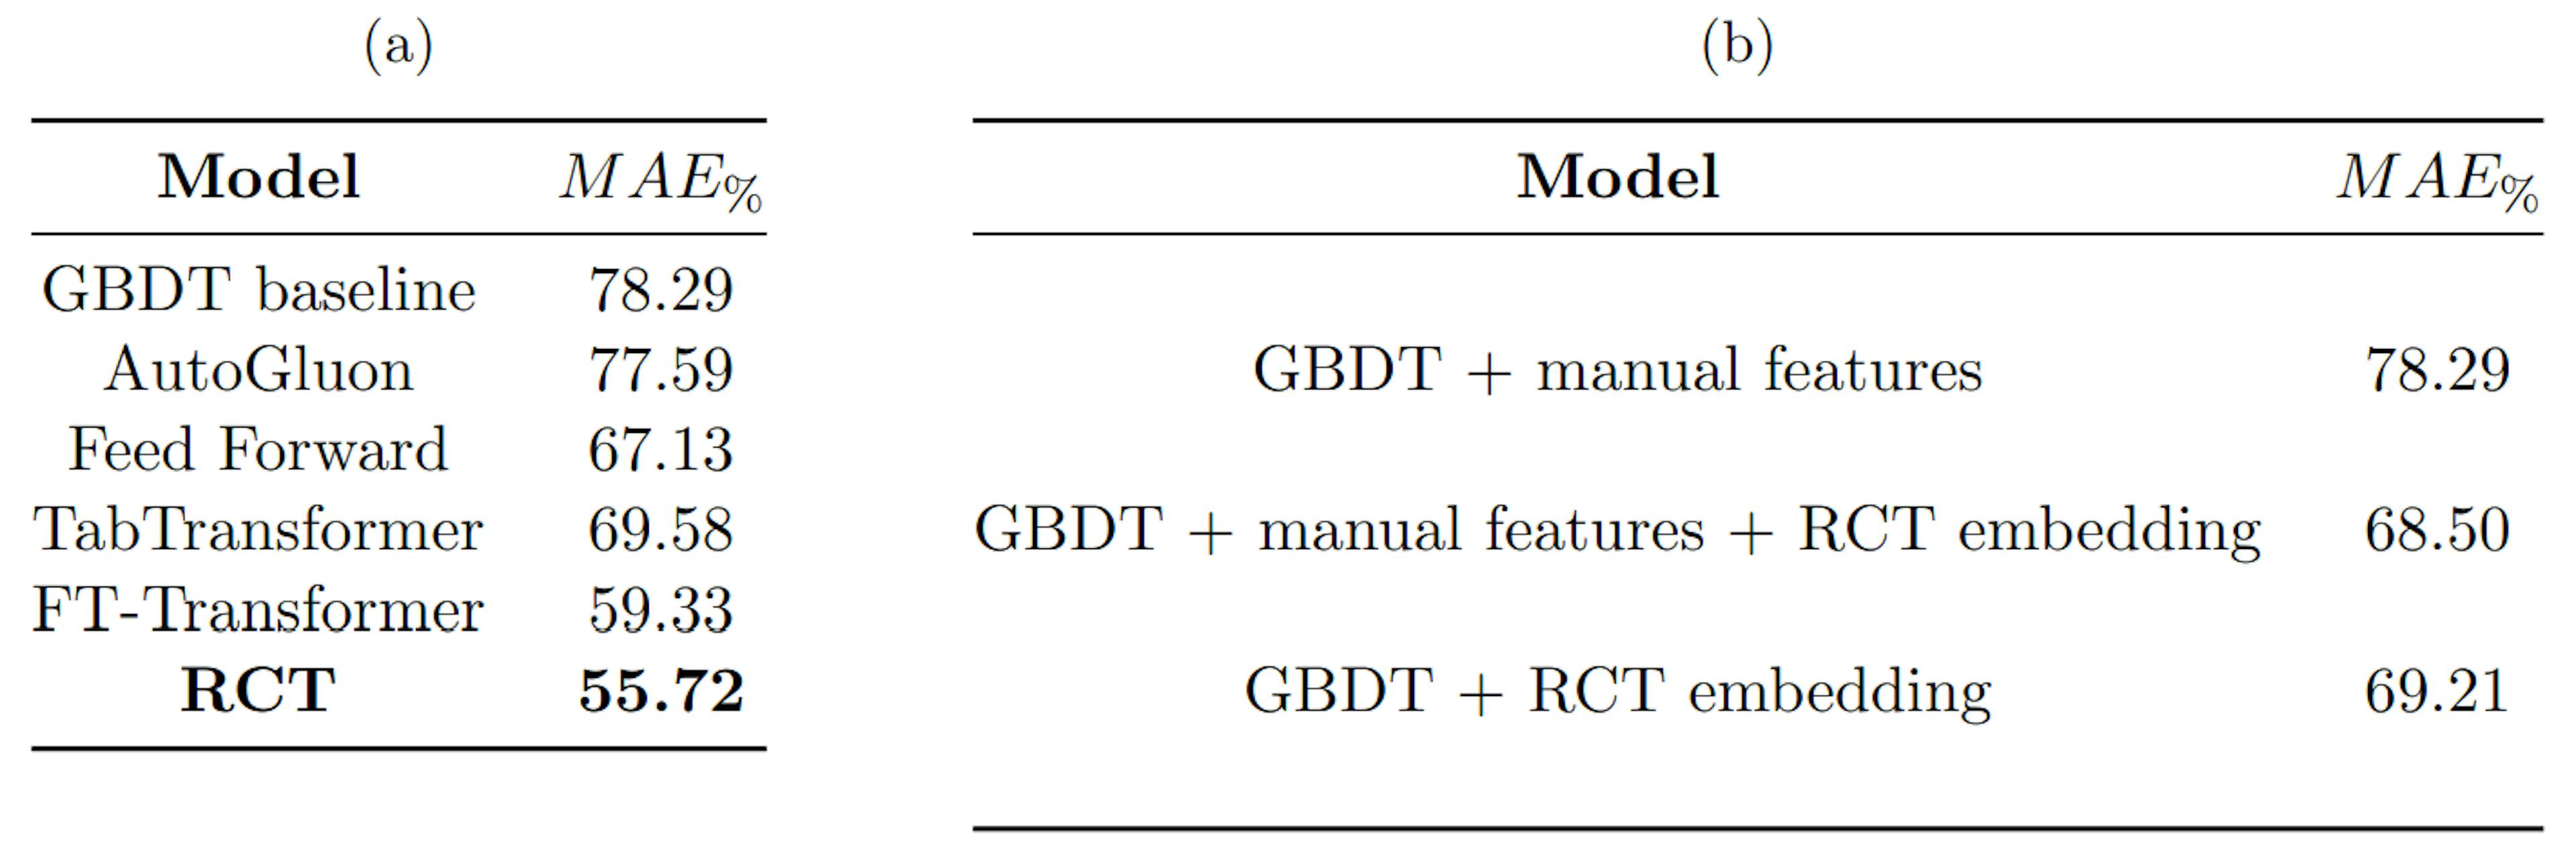 表 1：(a) 将 RCT 与各种基准的性能进行比较，(b) 将 GBDT 基线的性能与使用 RCT 嵌入训练的 GBDT 的性能进行比较。MAE% 的计算方式如公式 4 所示。